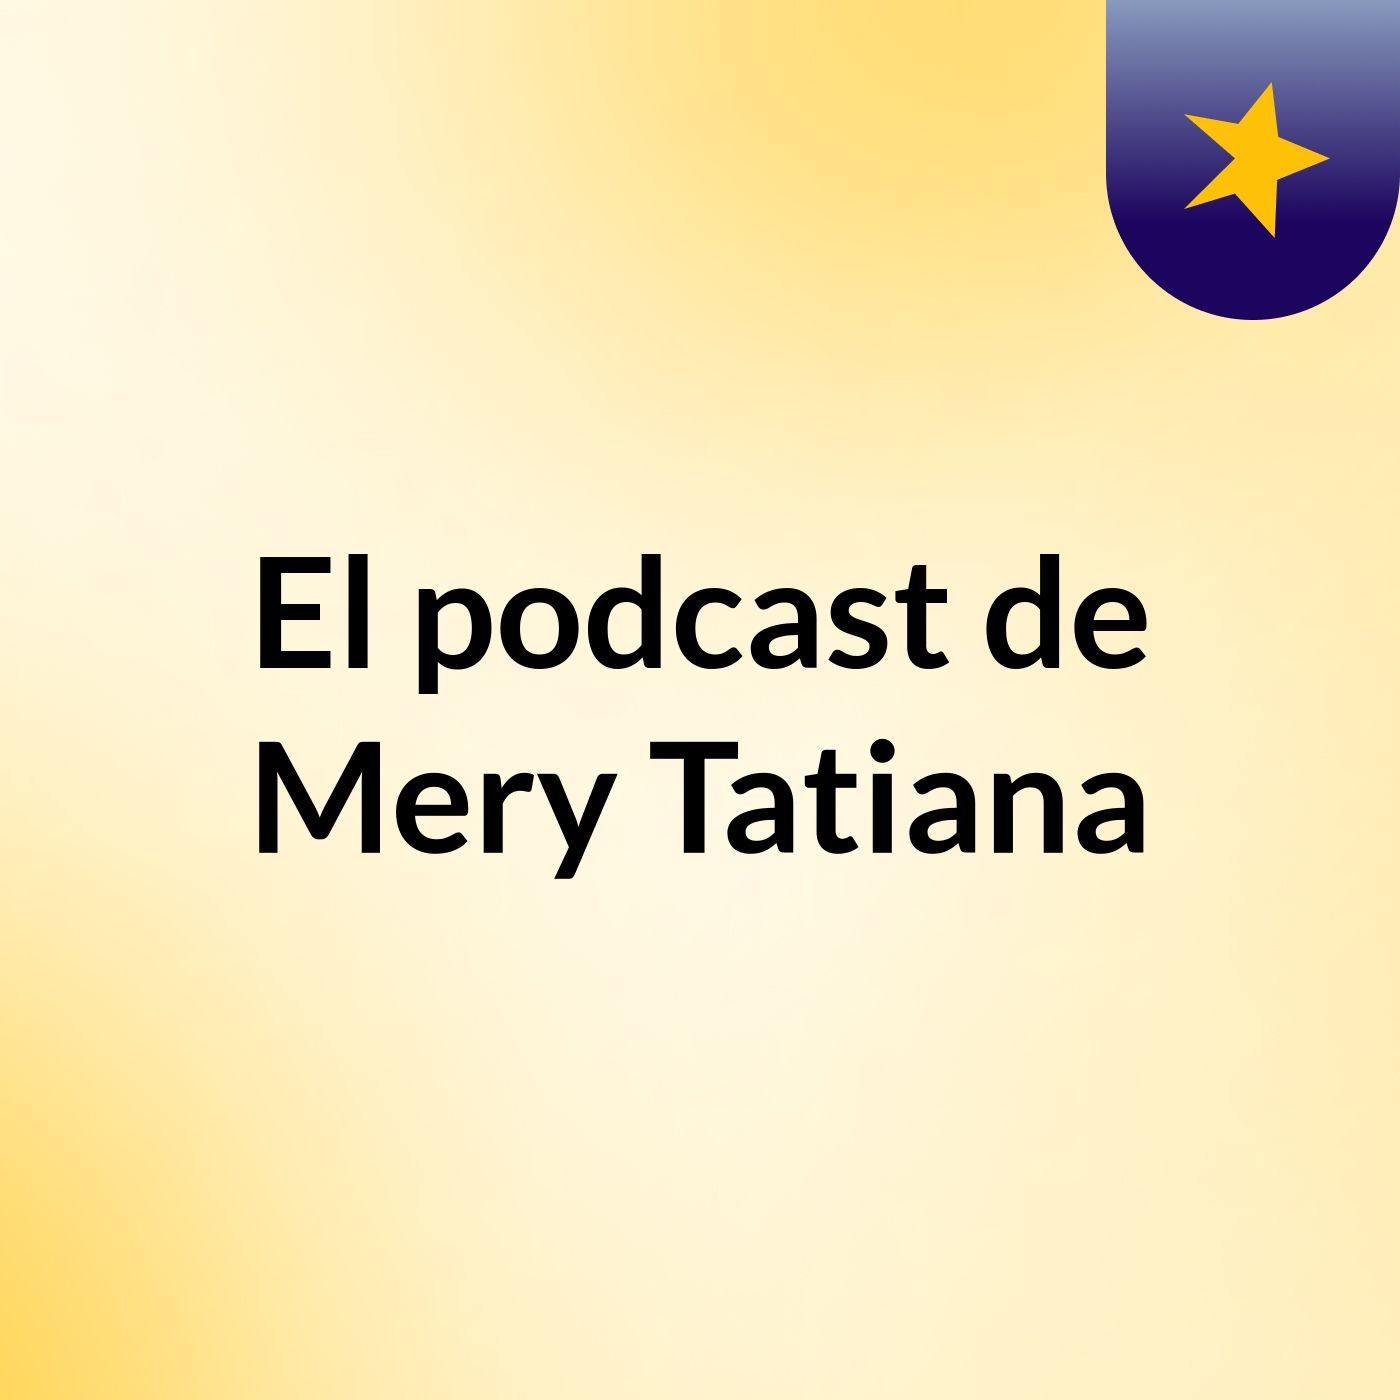 El podcast de Mery Tatiana